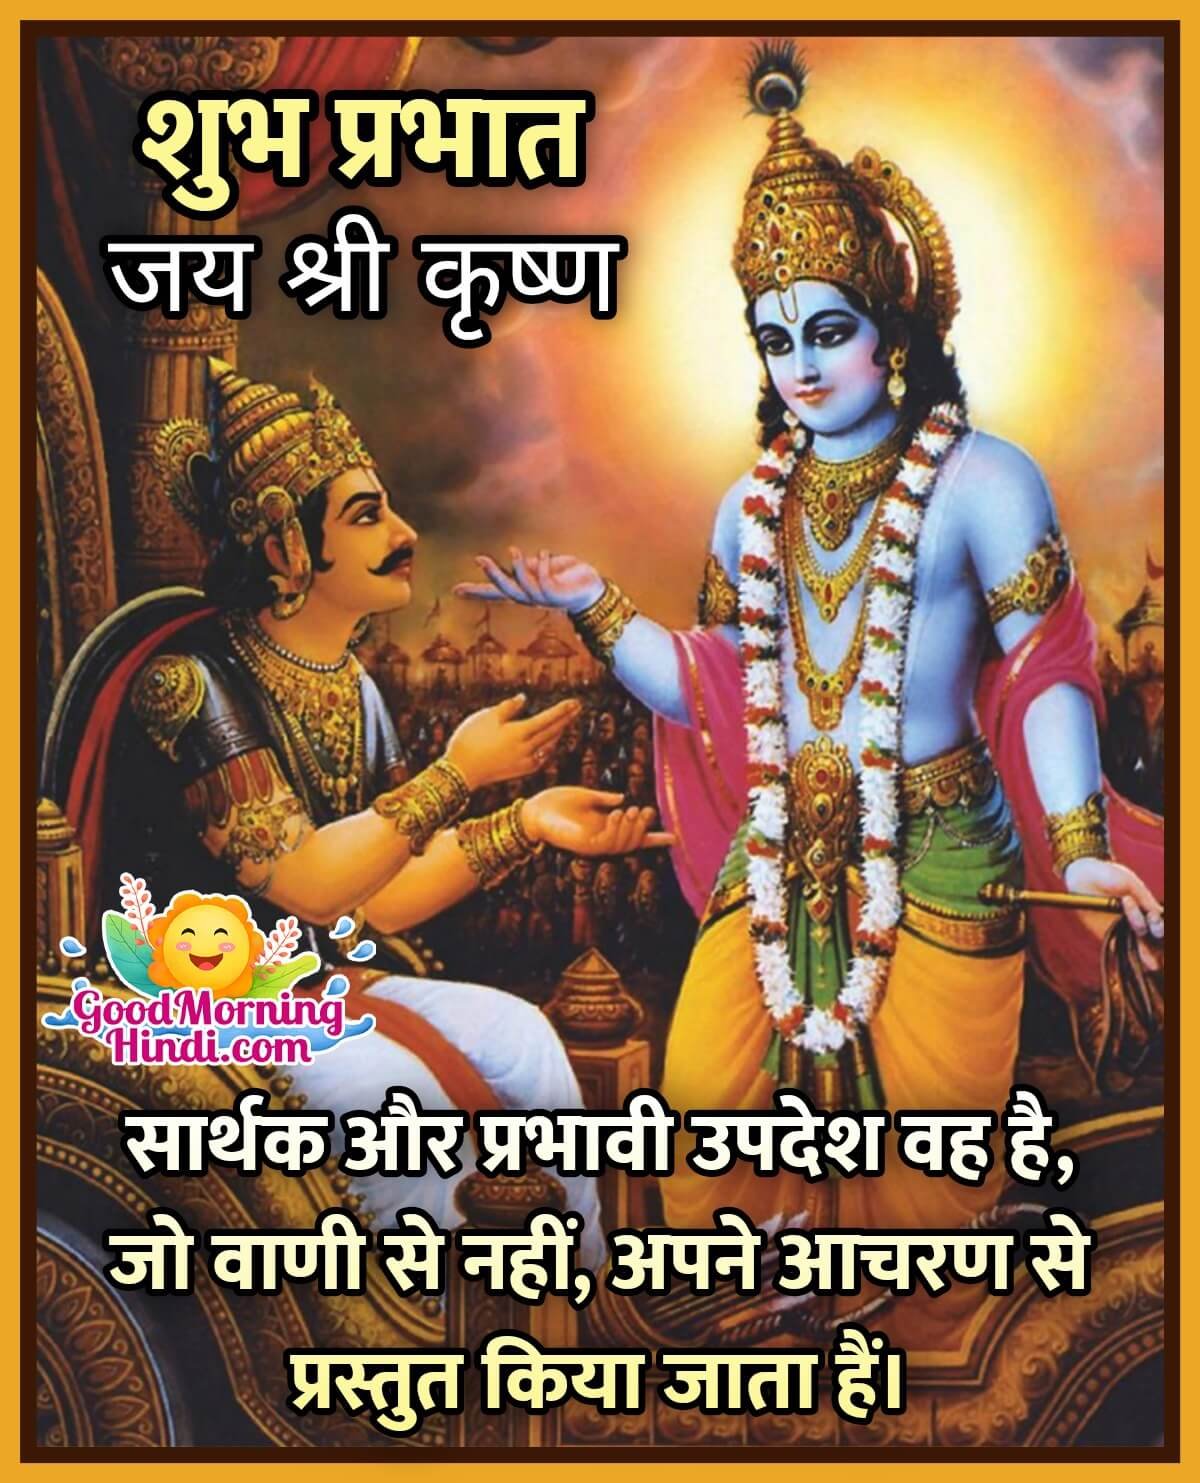 Saturday Shanidev Good Morning Images In Hindi Good Morning Wishes Images In Hindi